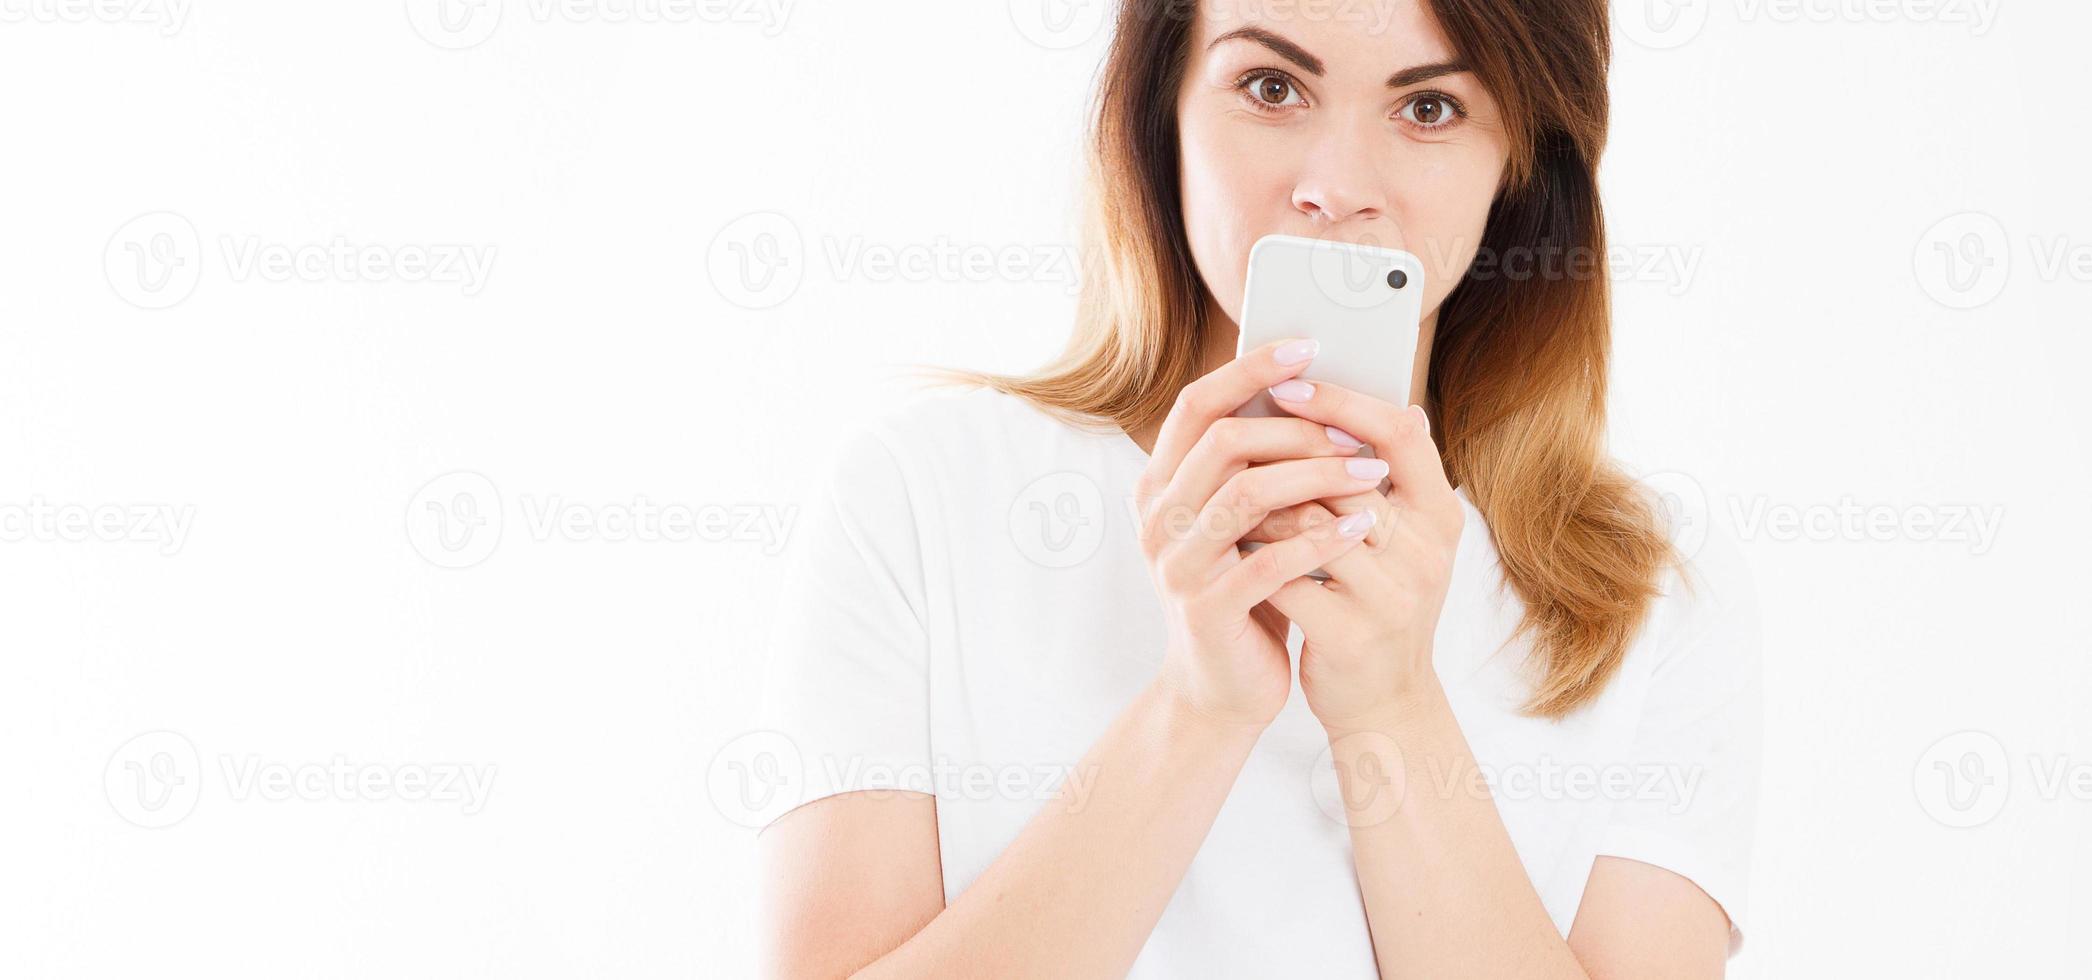 retrato recortado de uma jovem sorridente, segurando o telefone celular isolado no fundo branco, garota conversando, conceito de publicidade, espaço de cópia foto